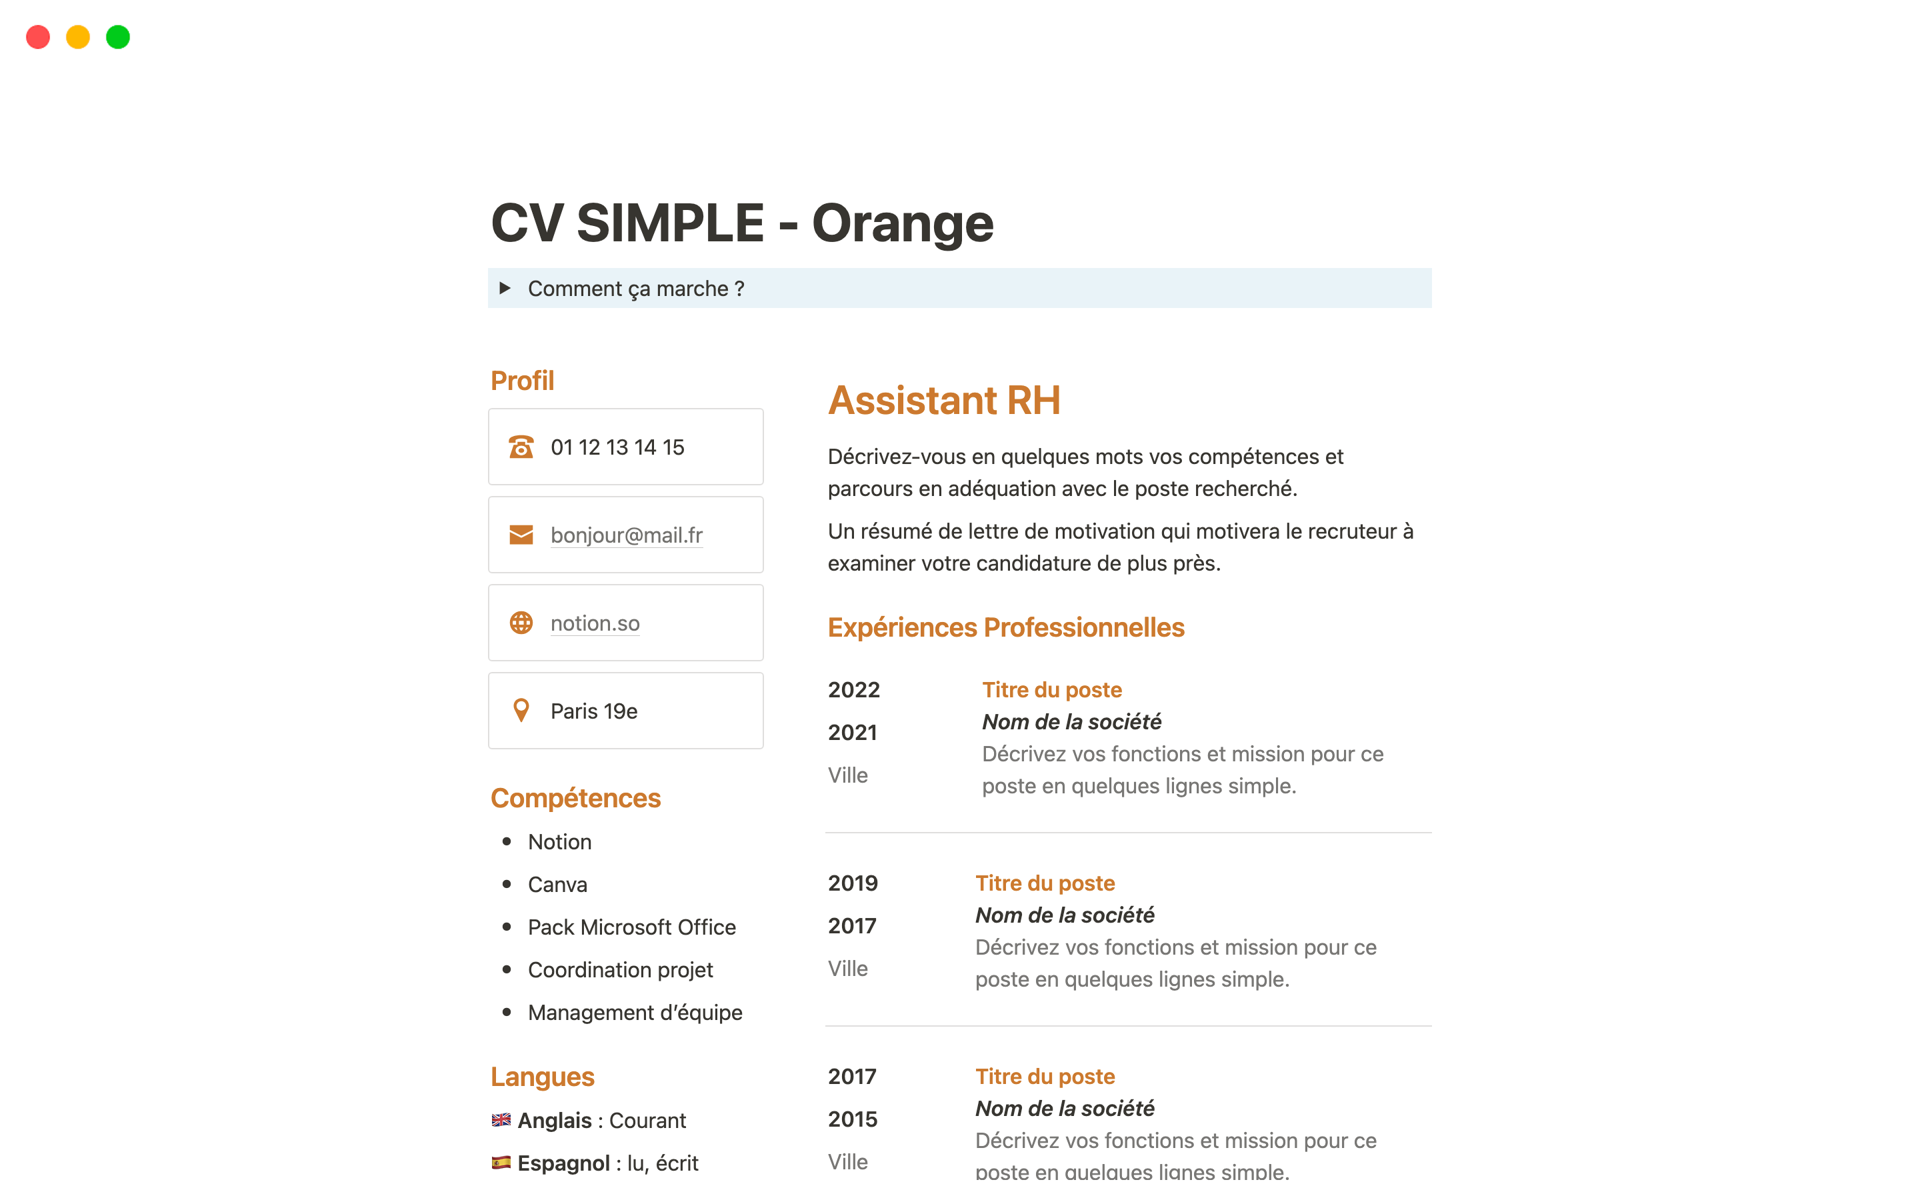 Vista previa de una plantilla para CV SIMPLE - Orange en Français